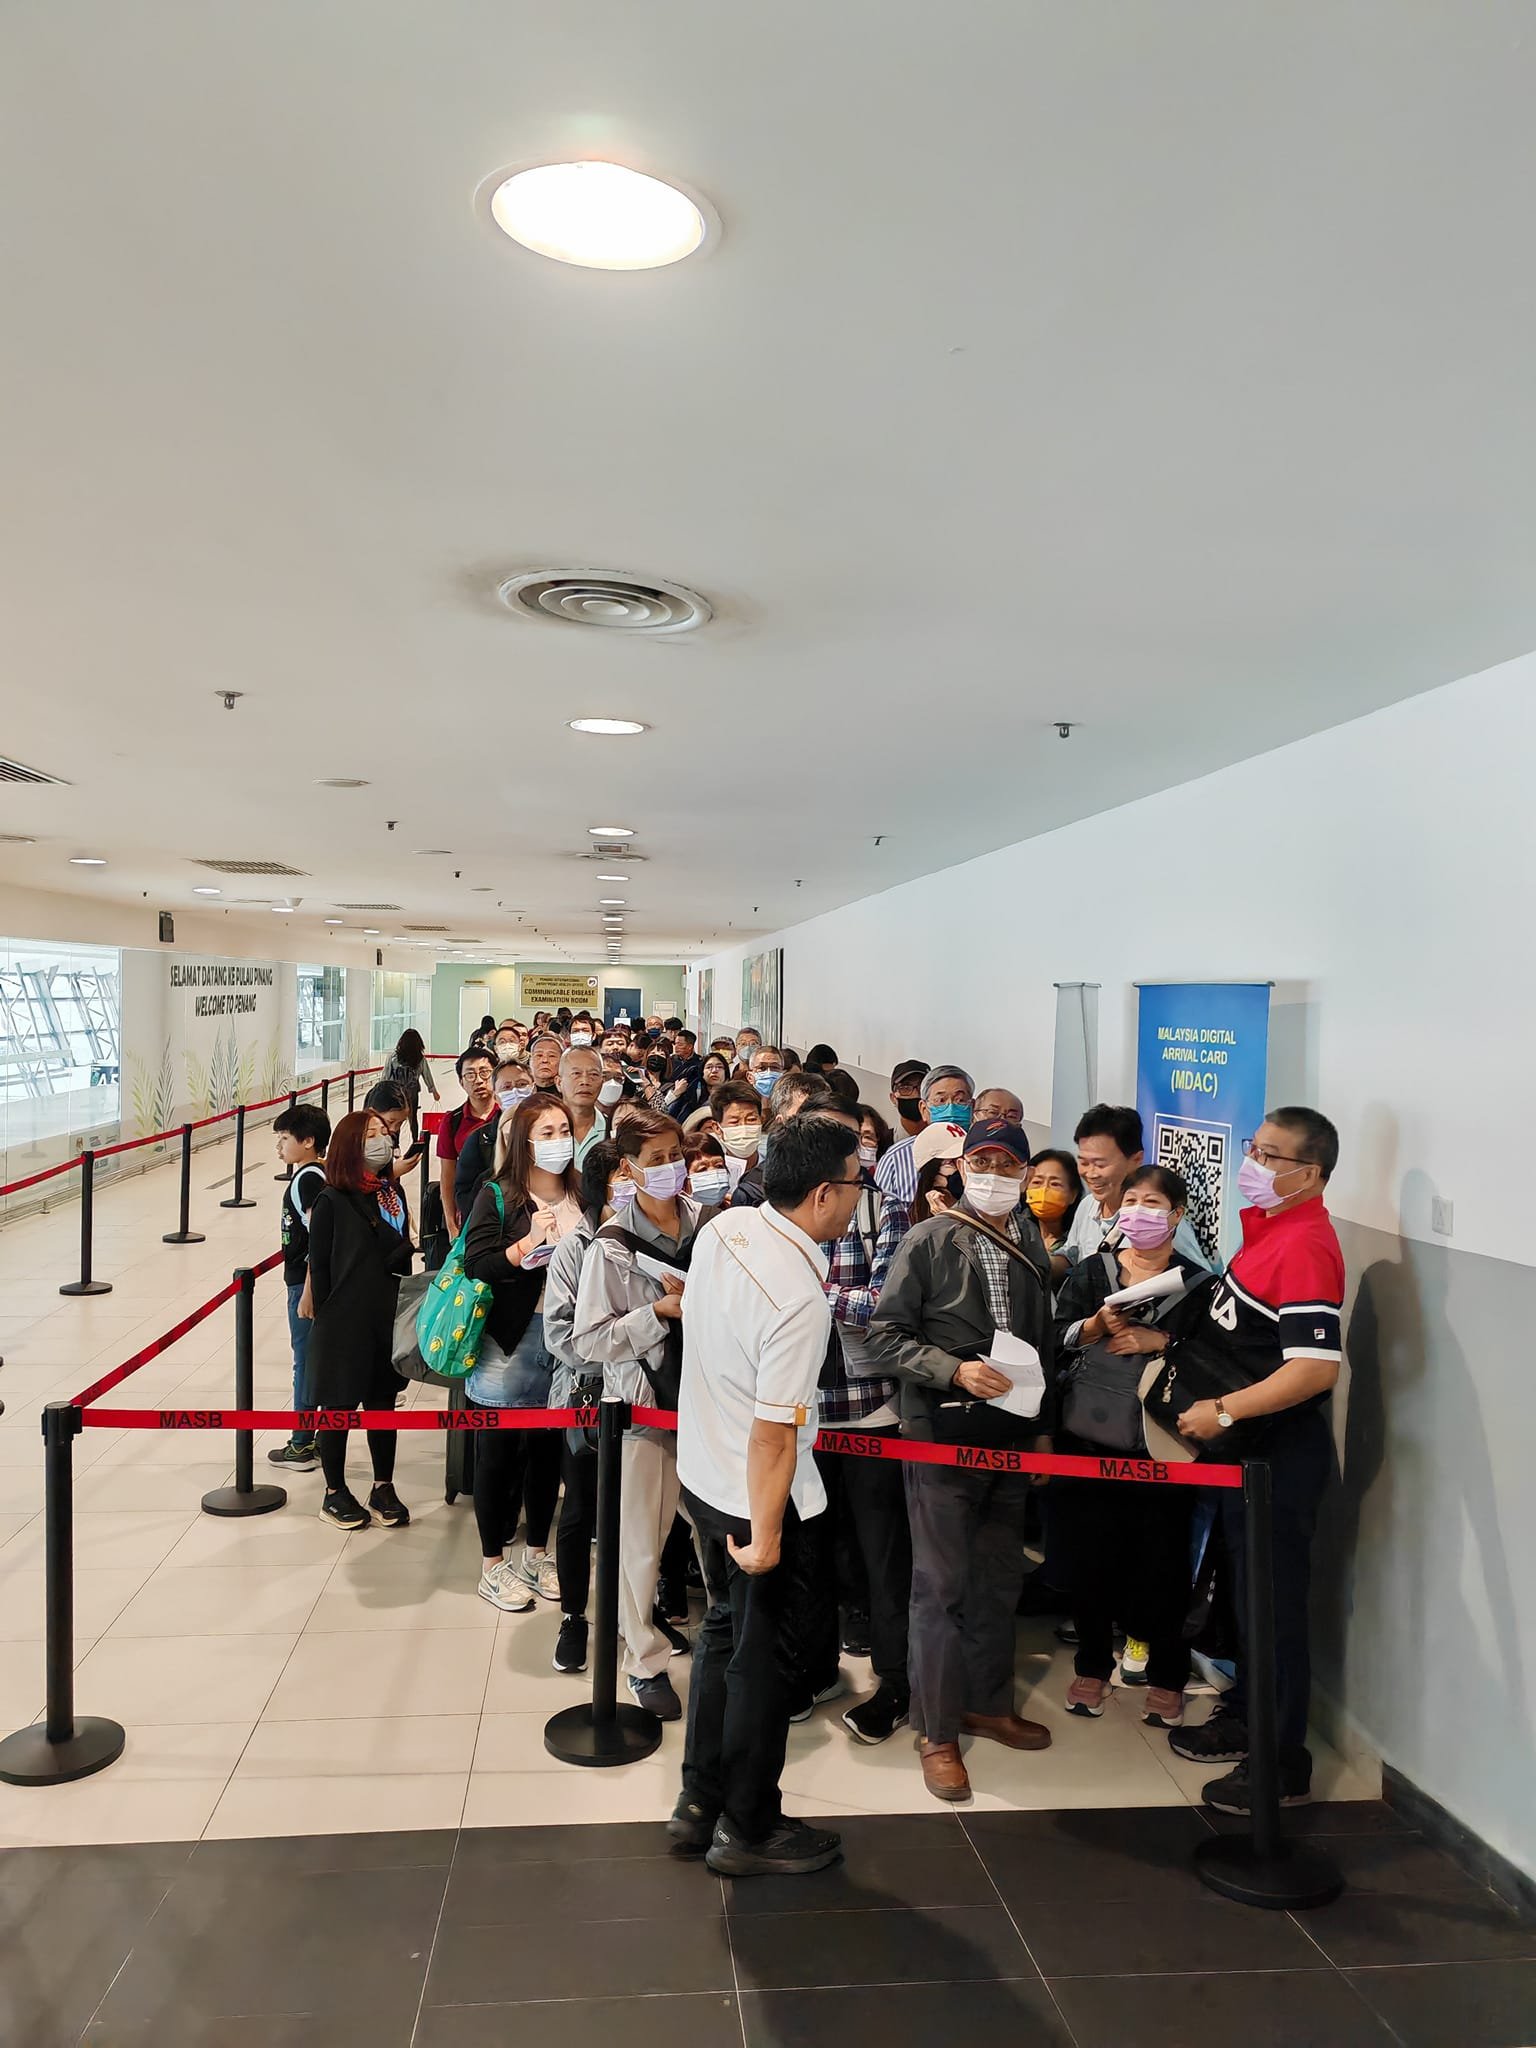 黄汉伟与抵达槟城机场的游客们交流。